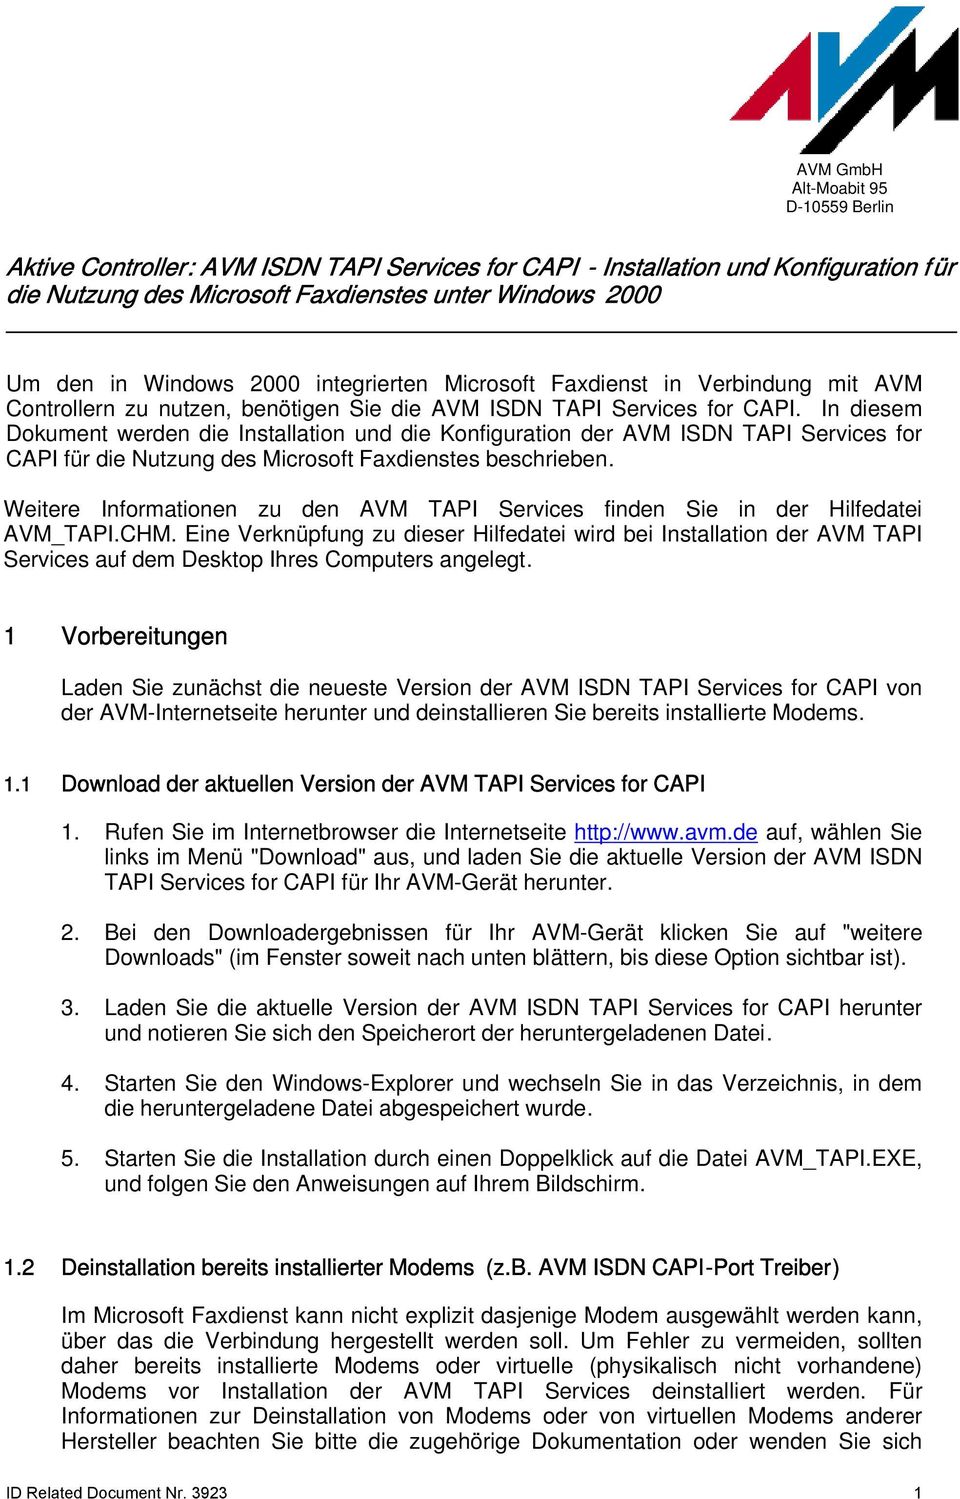 In diesem Dokument werden die Installation und die Konfiguration der AVM ISDN TAPI Services for CAPI für die Nutzung des Microsoft Faxdienstes beschrieben.